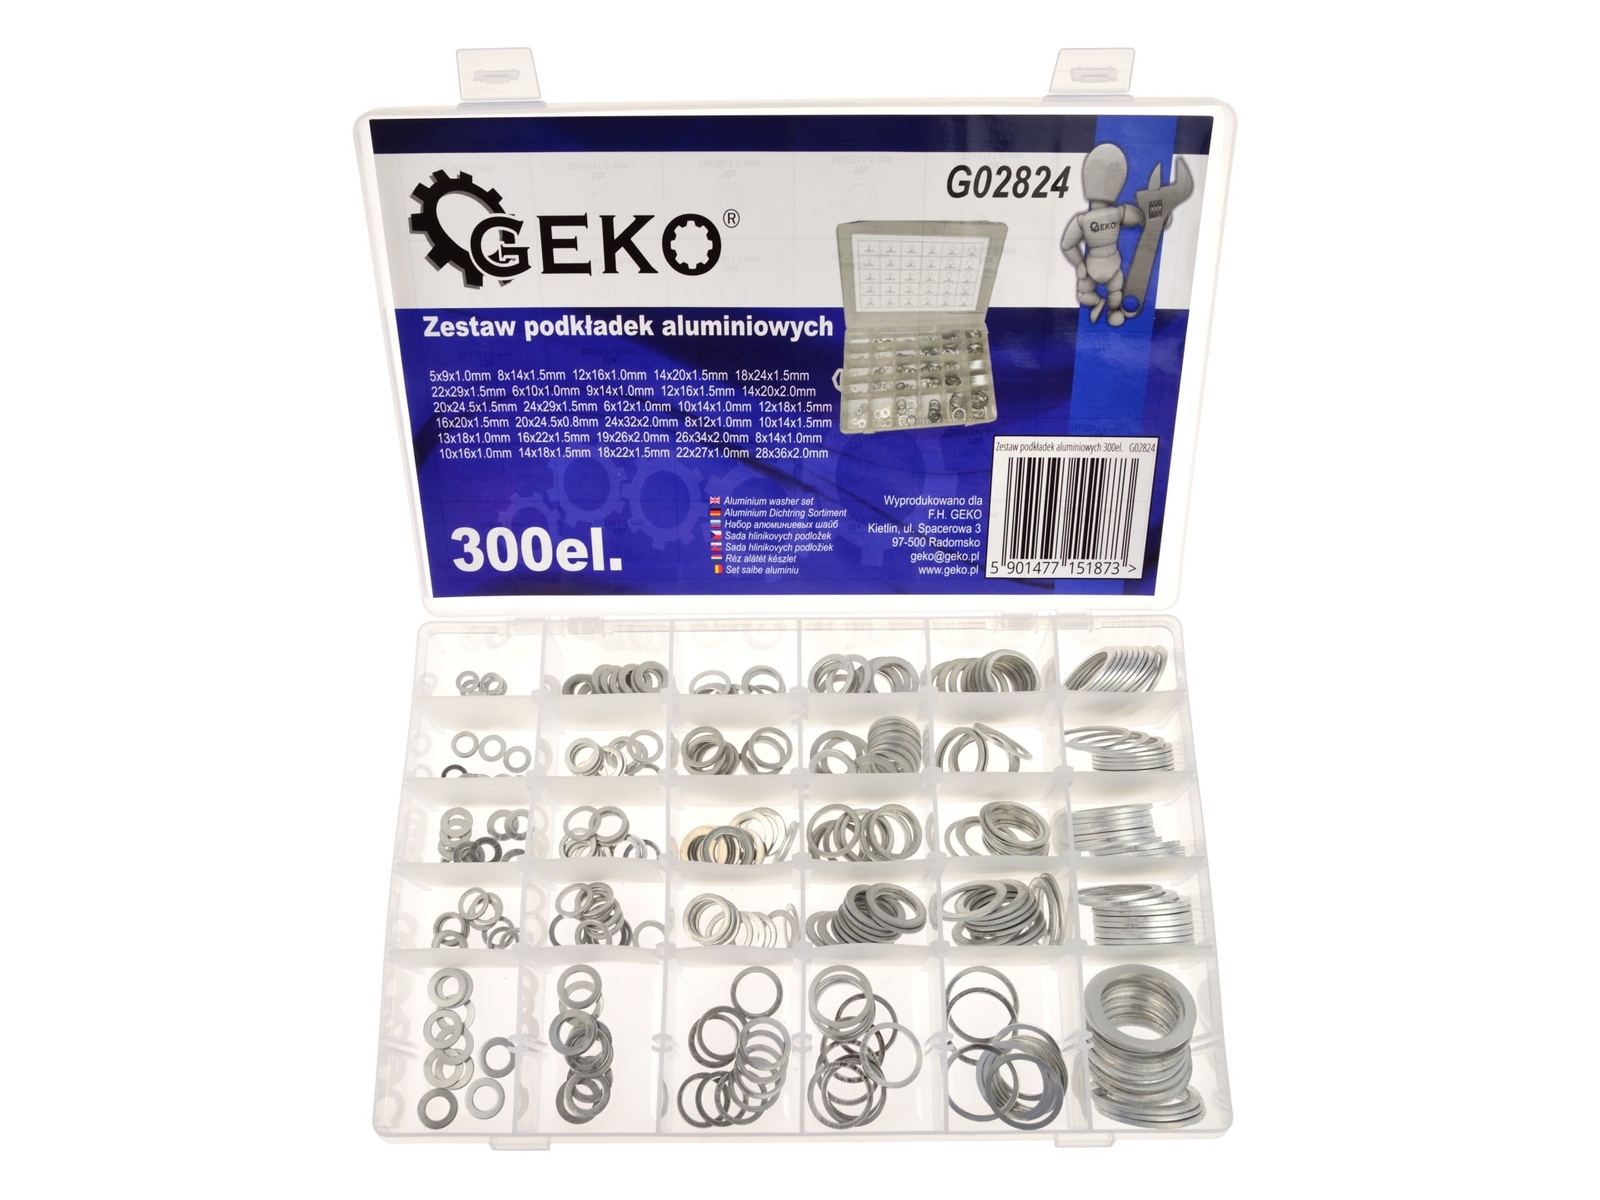 Image of Zestaw podkładek aluminiowych 300el podkładki aluminiowe GEKO